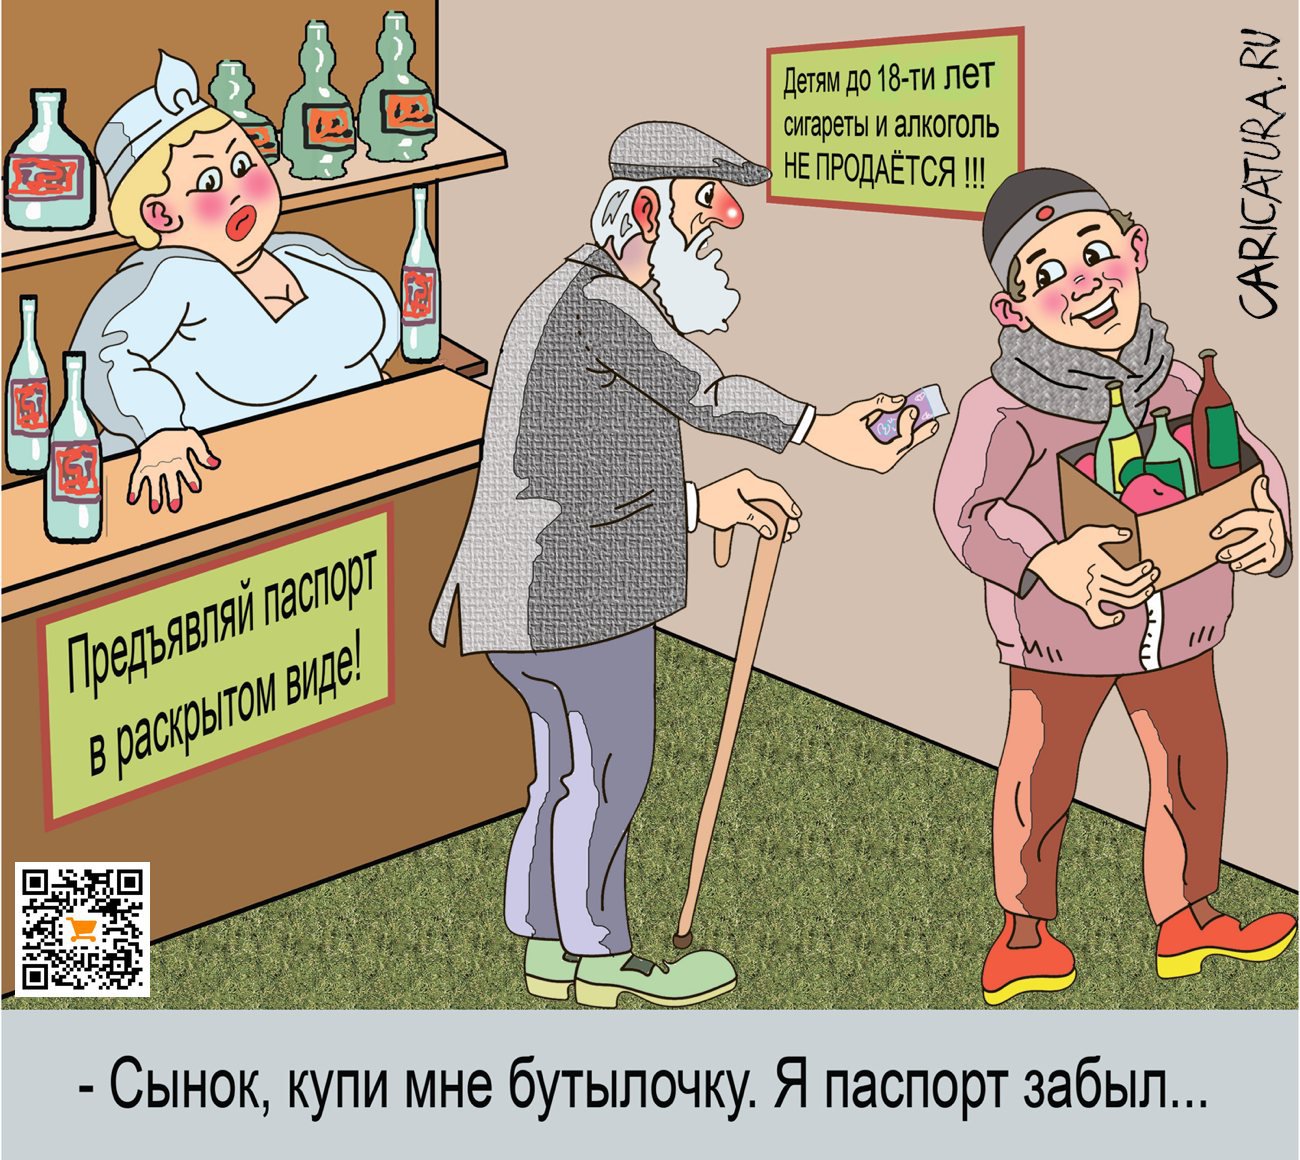 Карикатура "Без паспорта", Александр Максимович